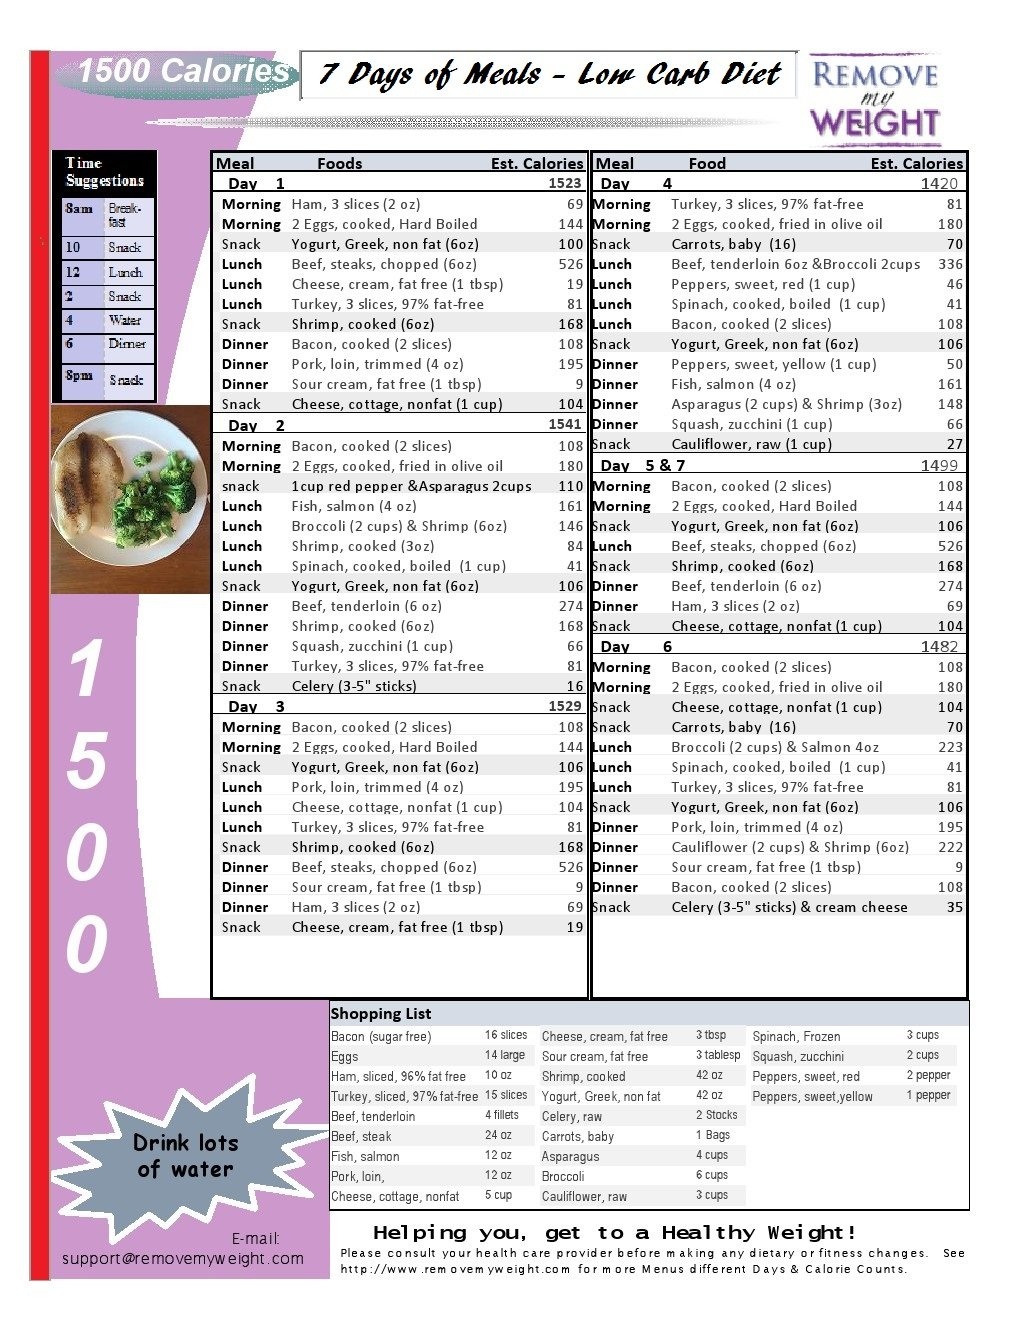 Printable Low Carb Diet: 1 Week -1500 Calorie Menu Plan - Menu Plan - Free Printable Atkins Diet Plan